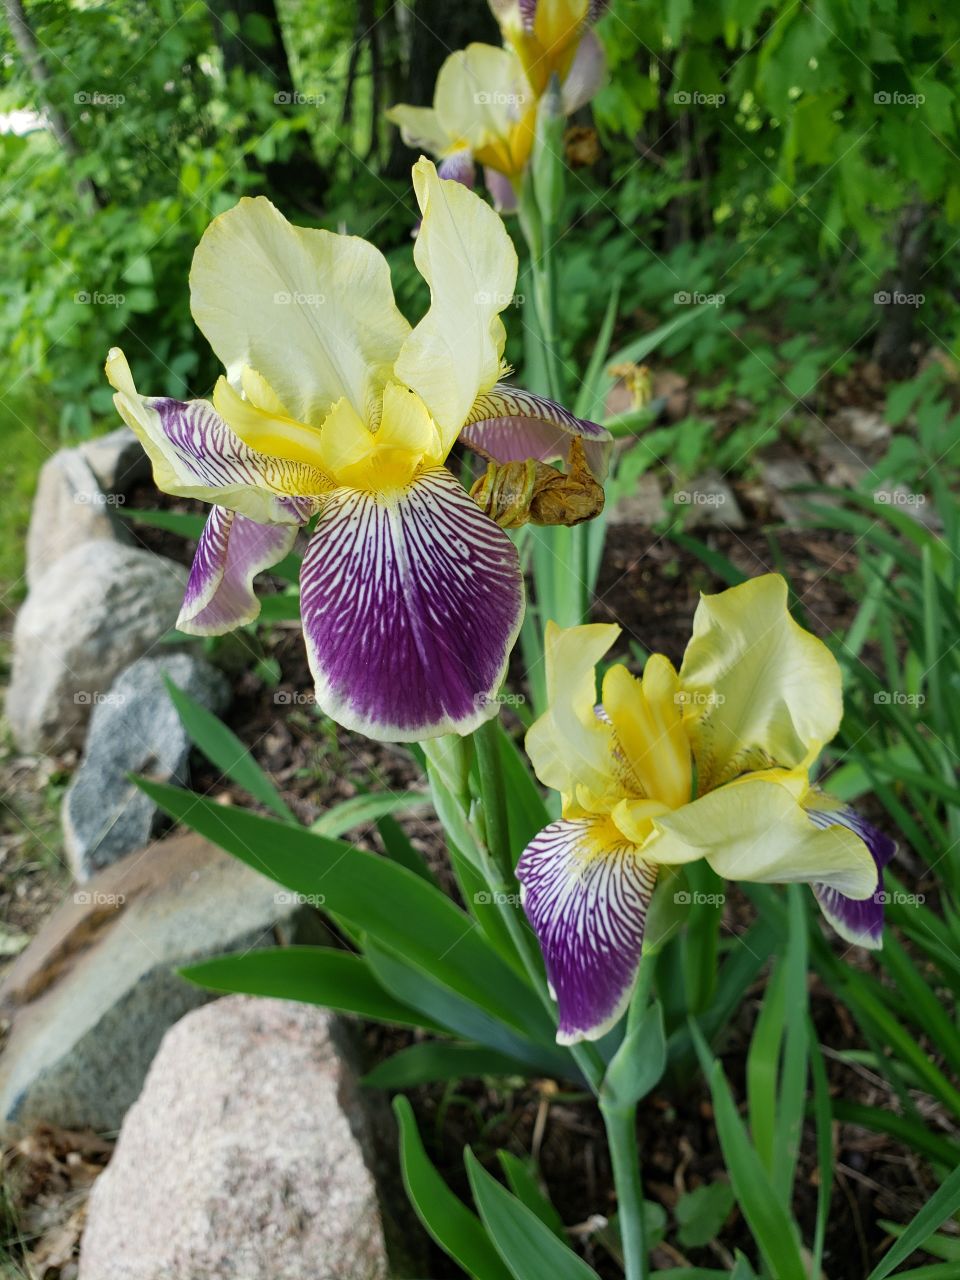 iris flowers blooming in June